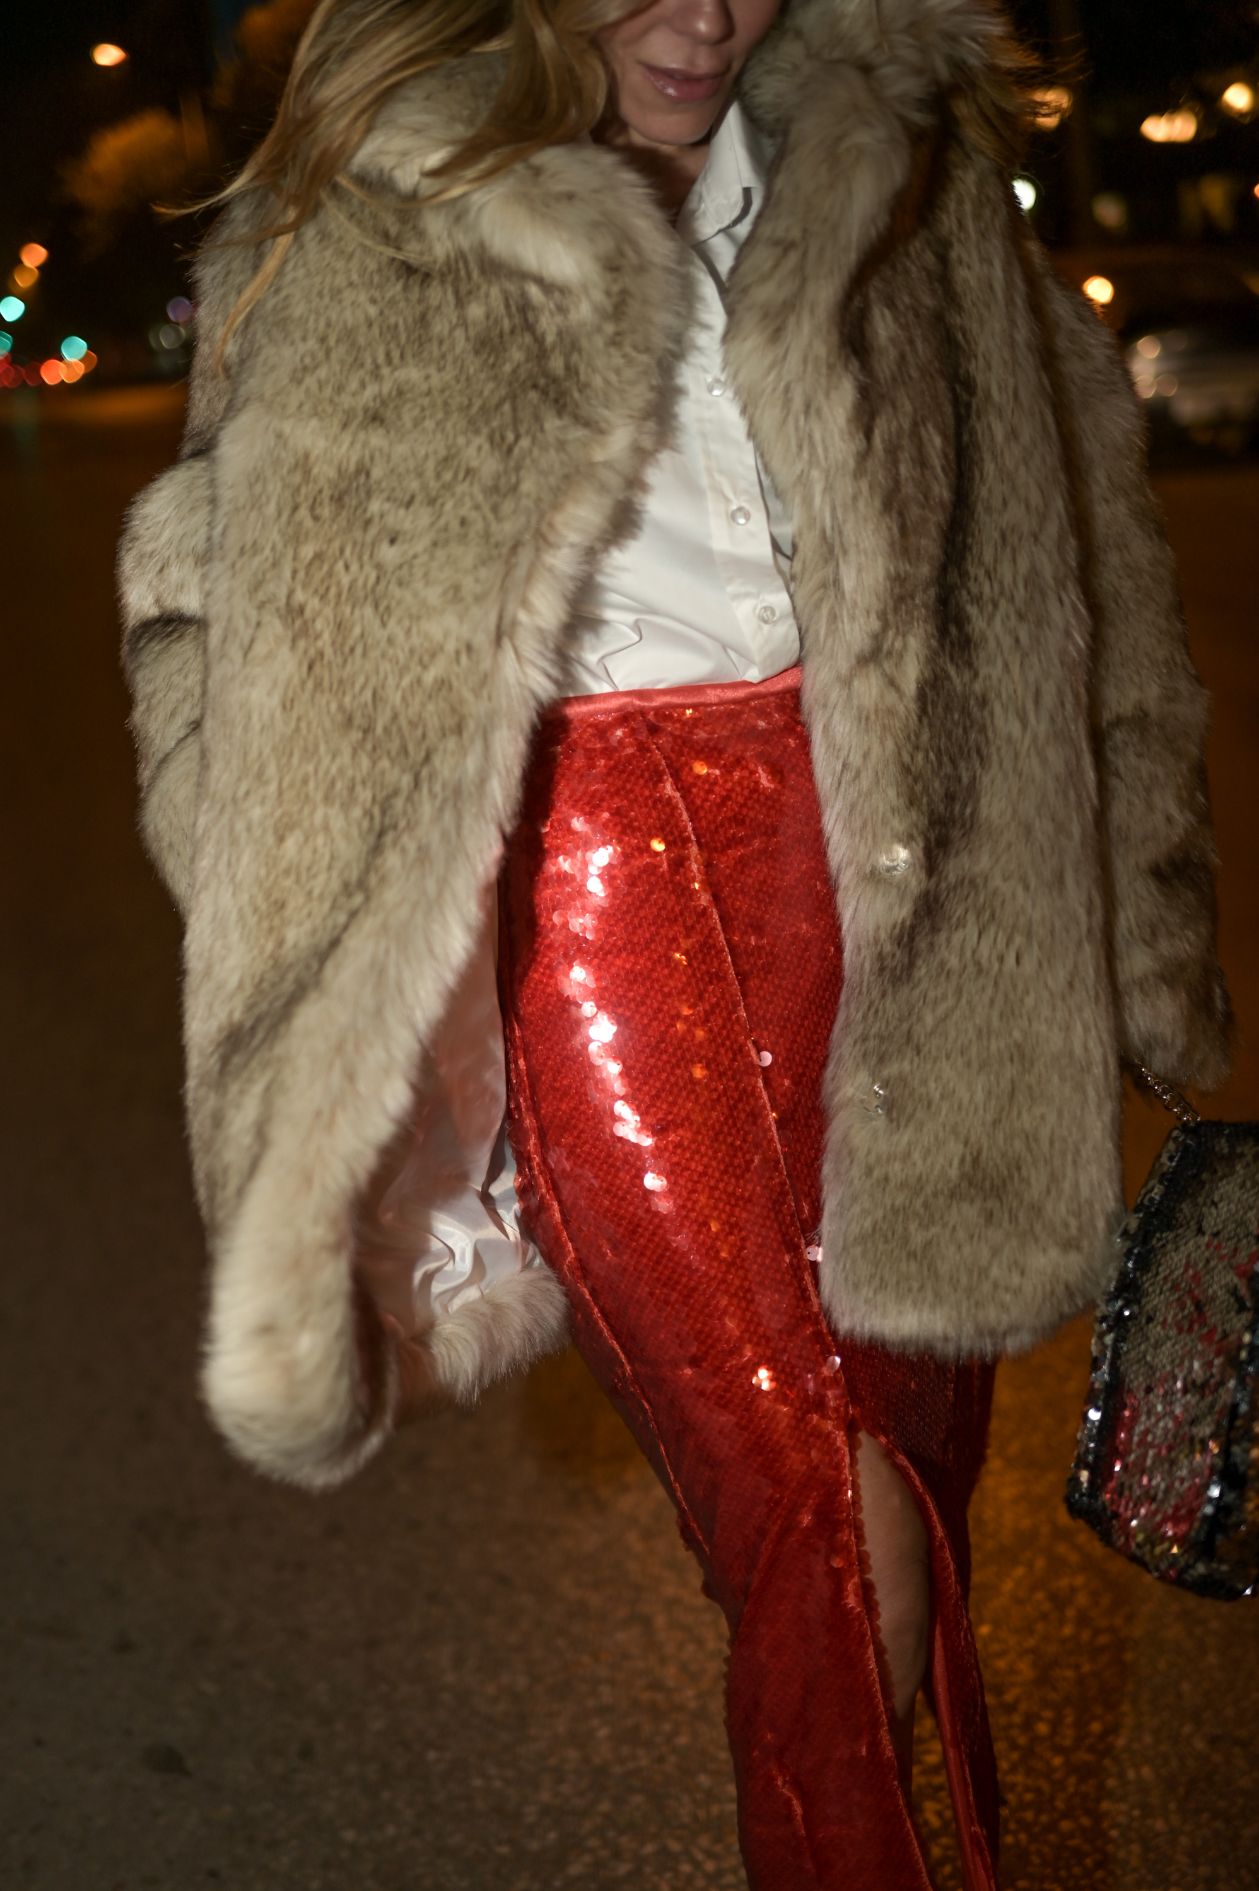 φούστα μιντι κόκκκινη παγιέτα μοναδική λαμπερή βραδινό στυλ σκίσιμο occasion wear must-have